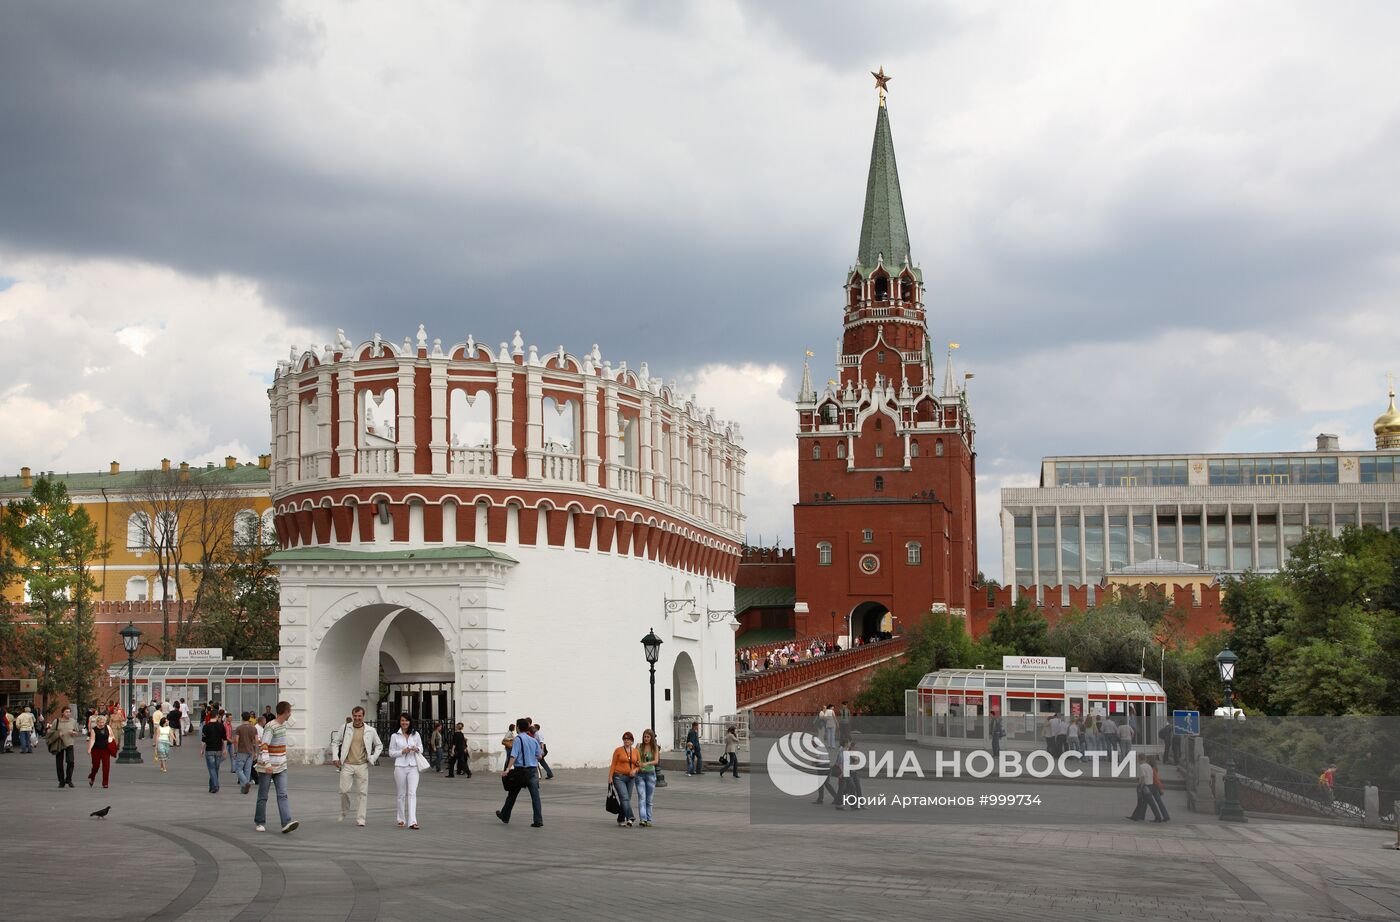 троицкая башня московского кремля